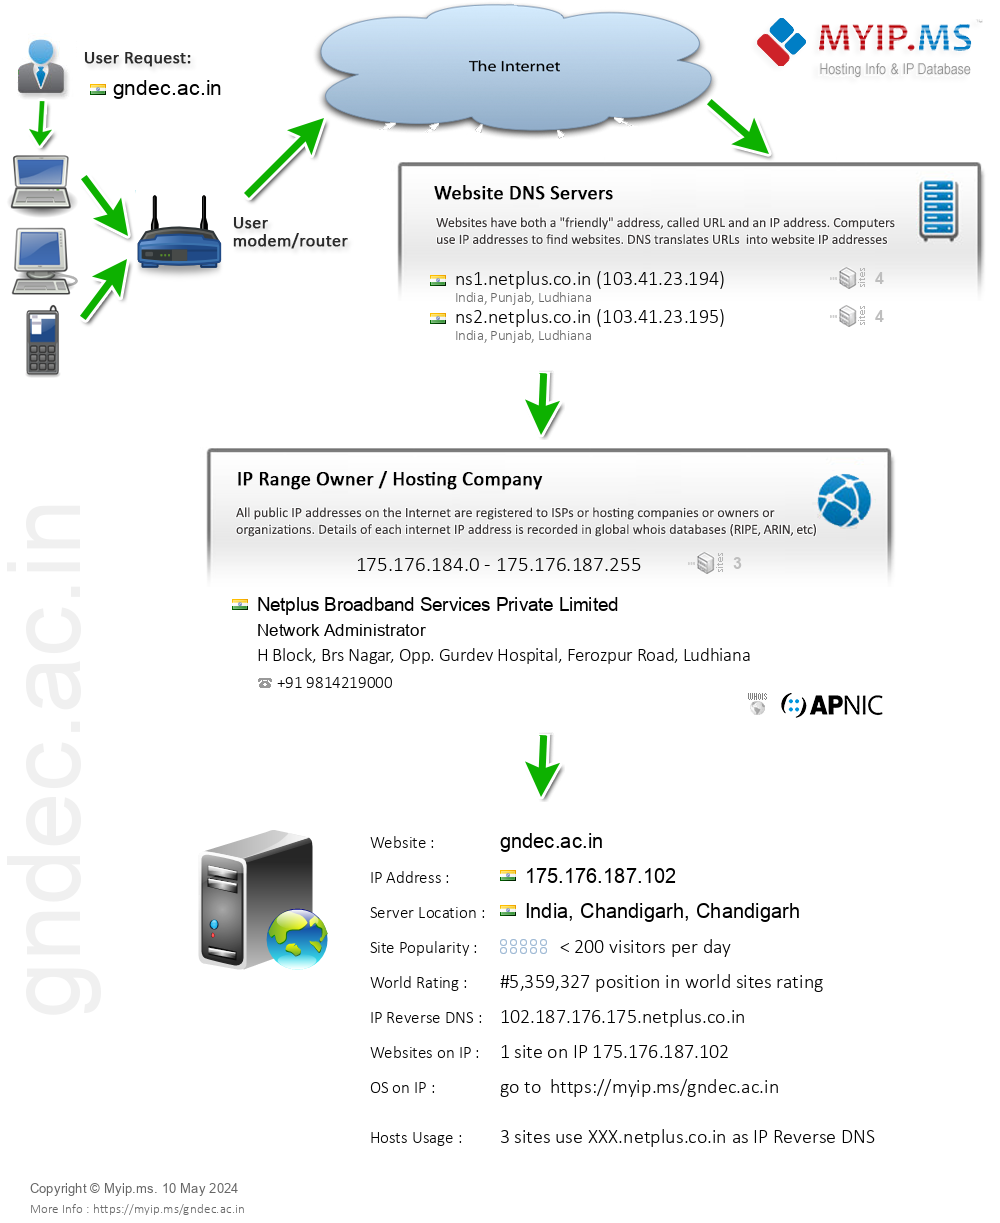 Gndec.ac.in - Website Hosting Visual IP Diagram